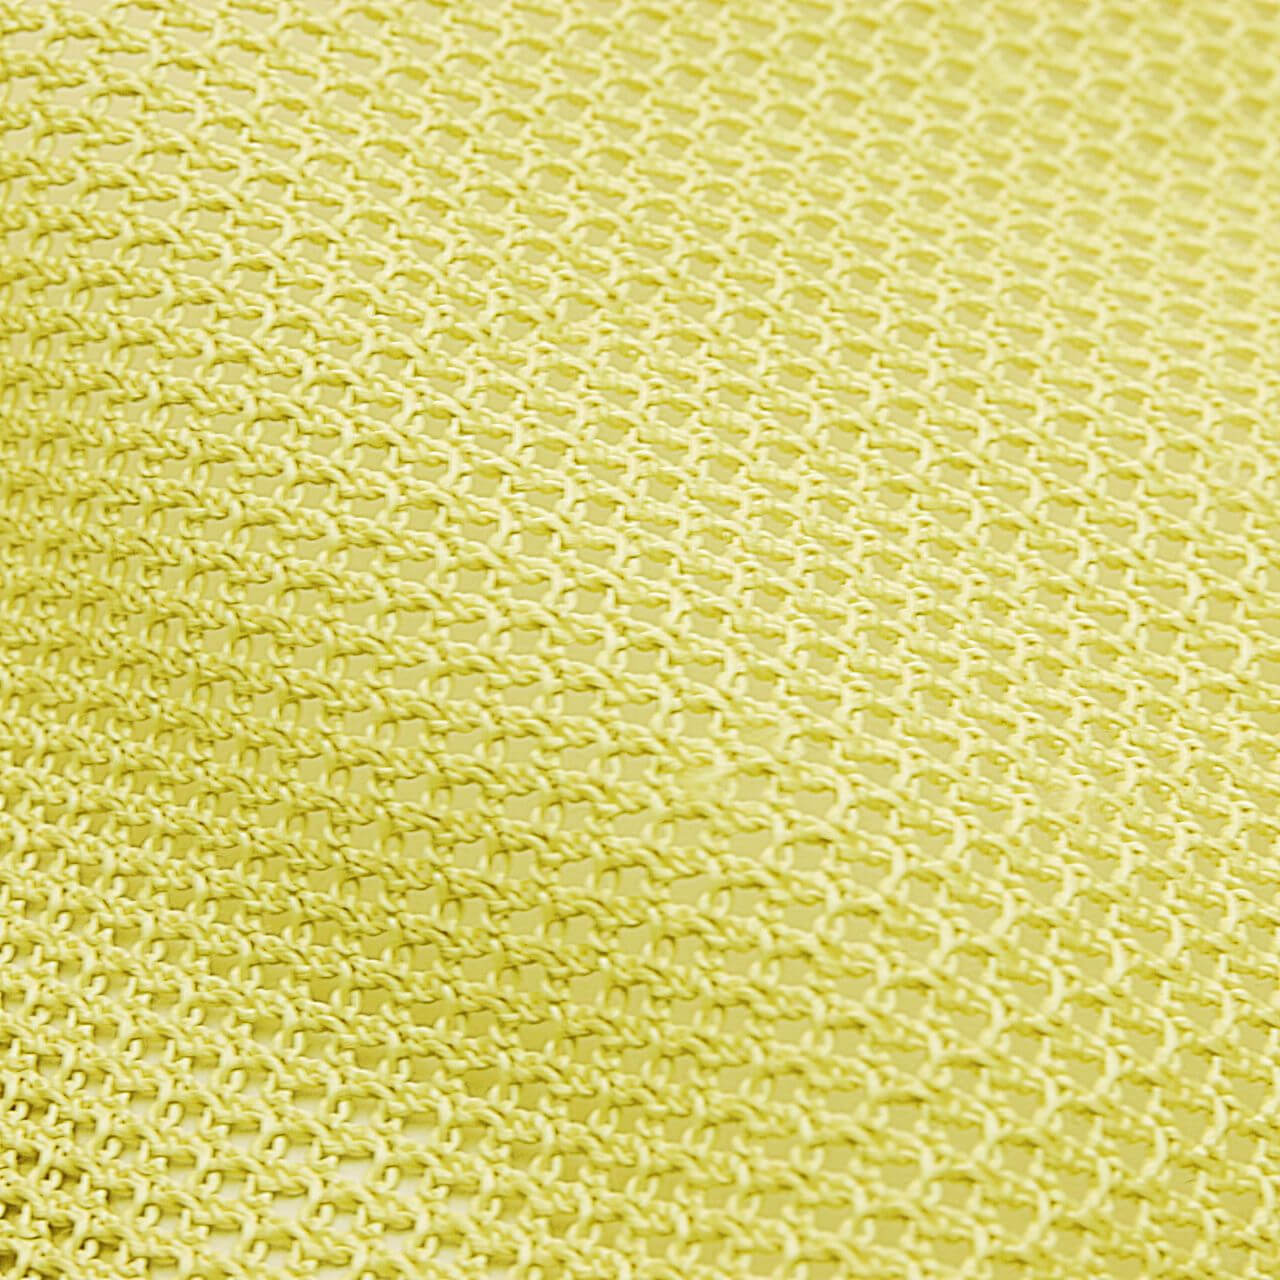 kevlar fabric-kevlar filament net fabric